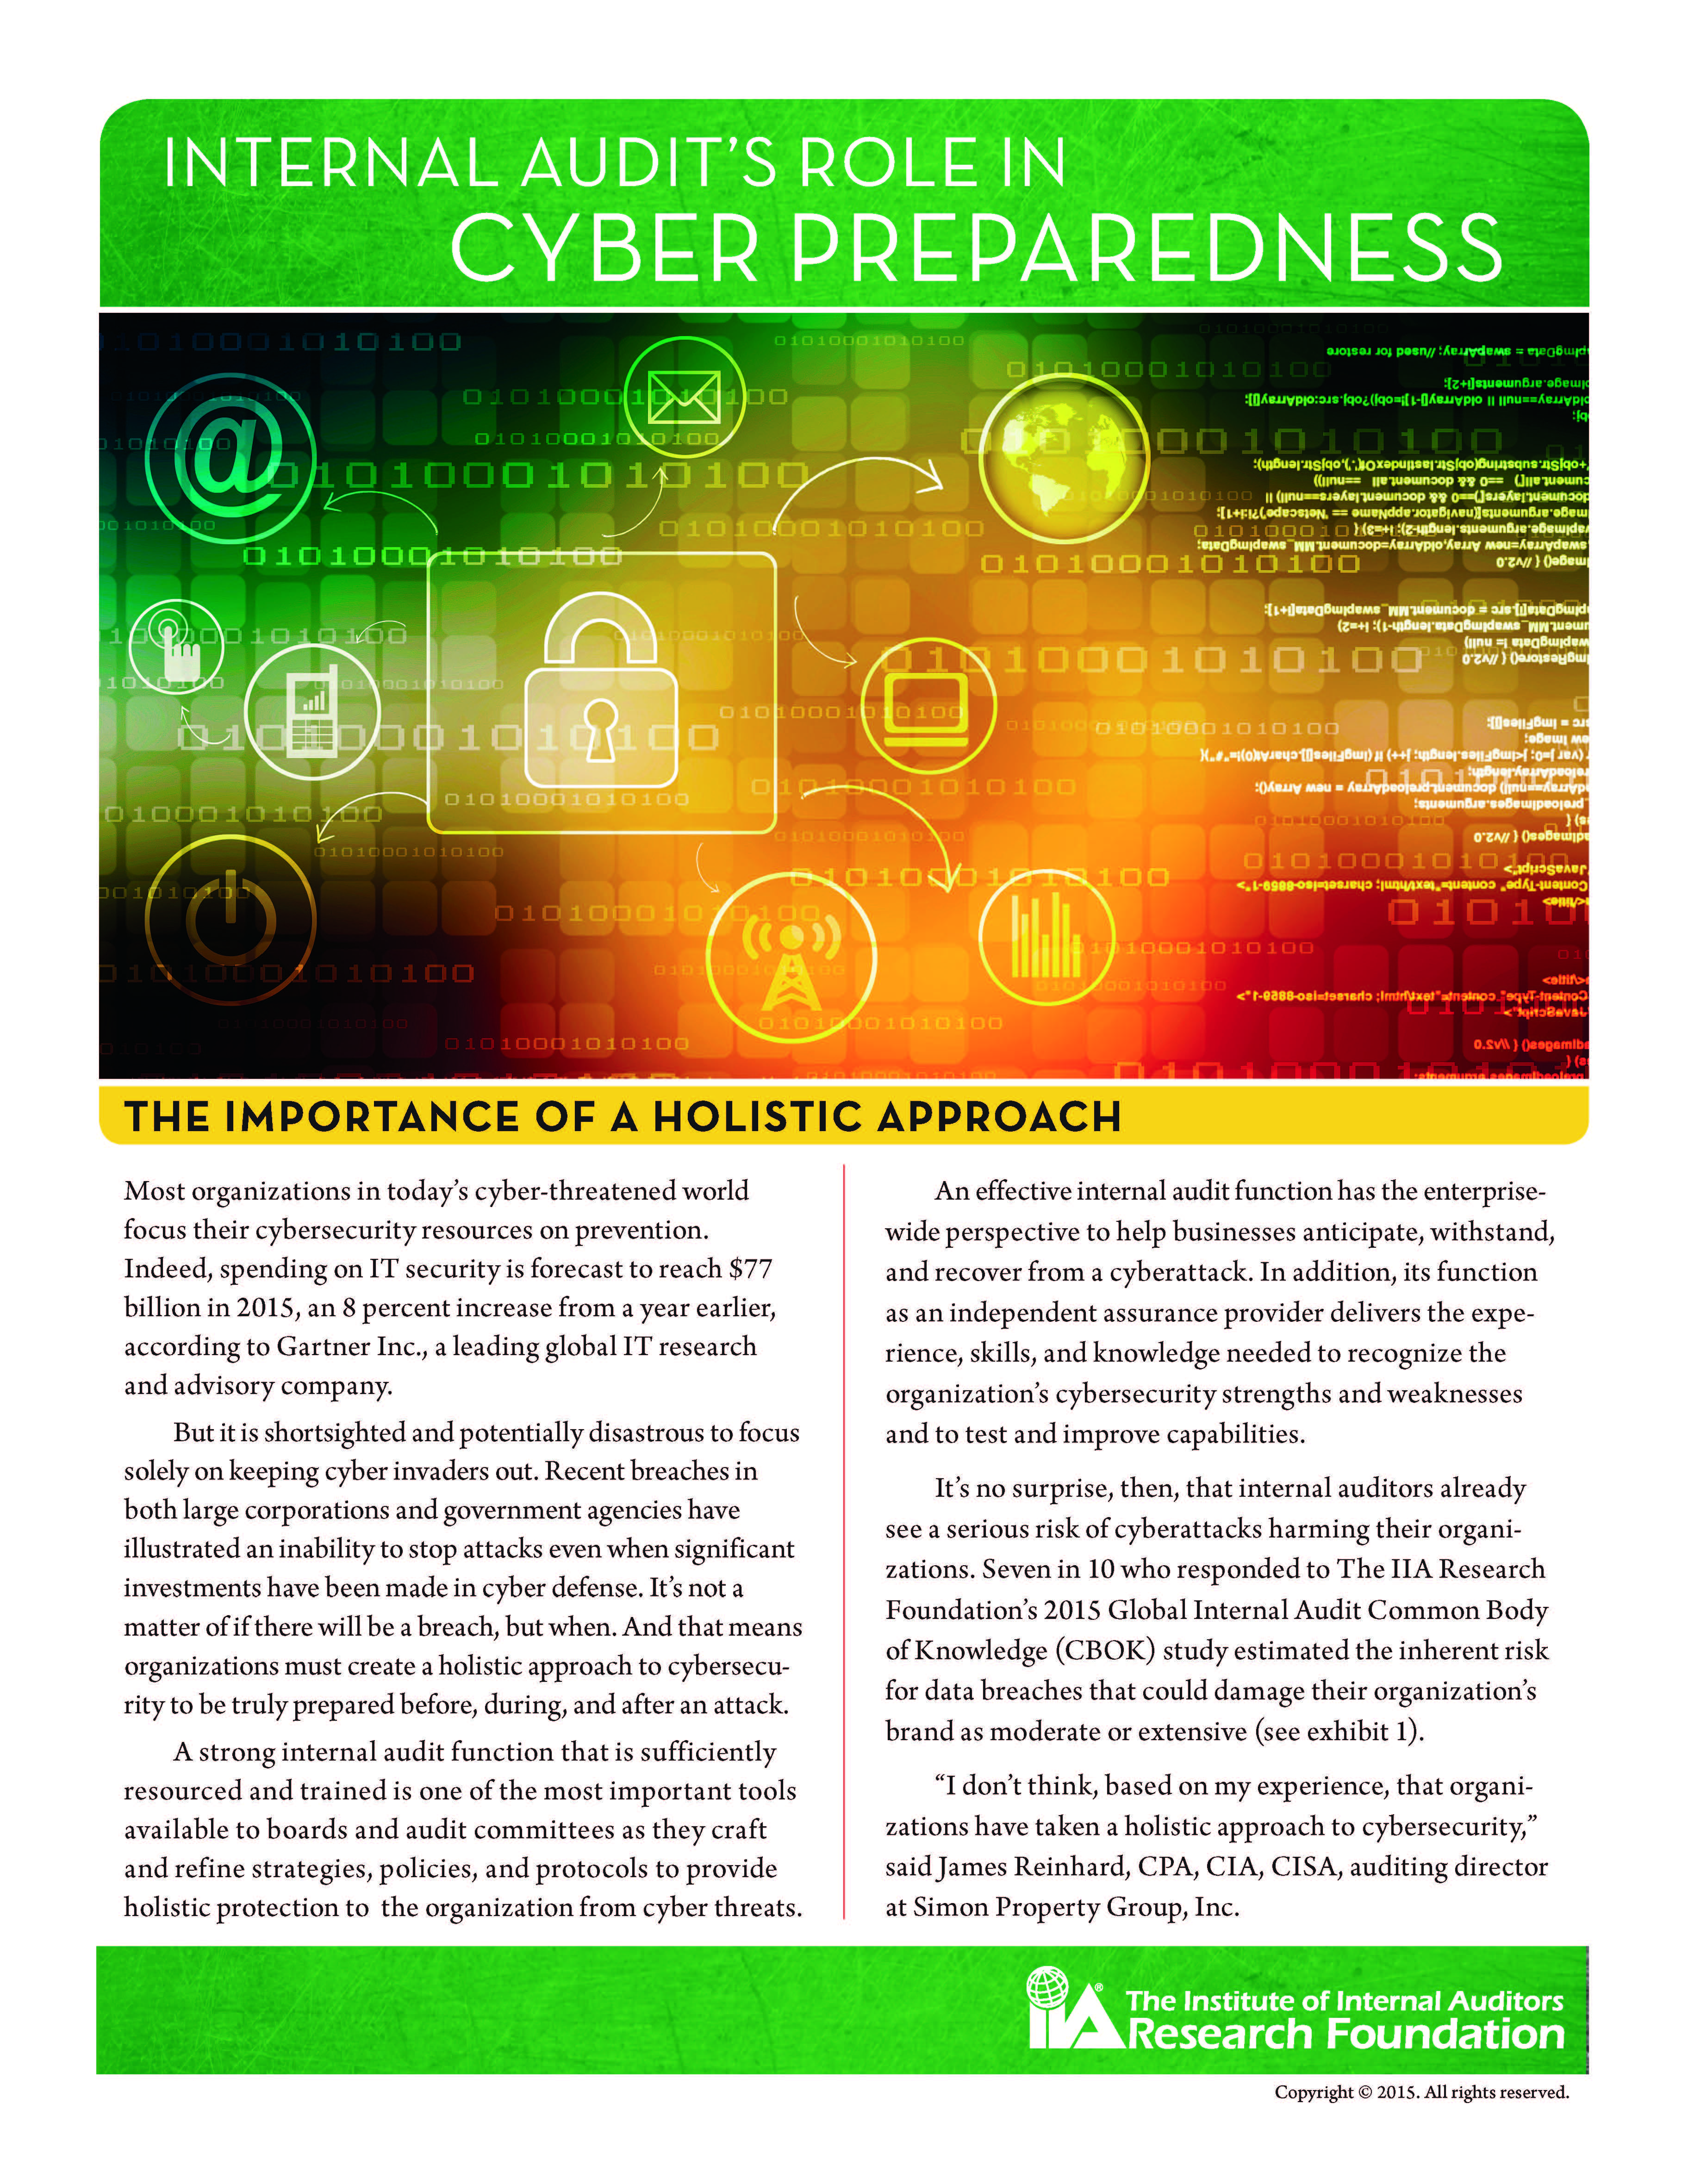 Internal Audit’s Role in Cyber Preparedness